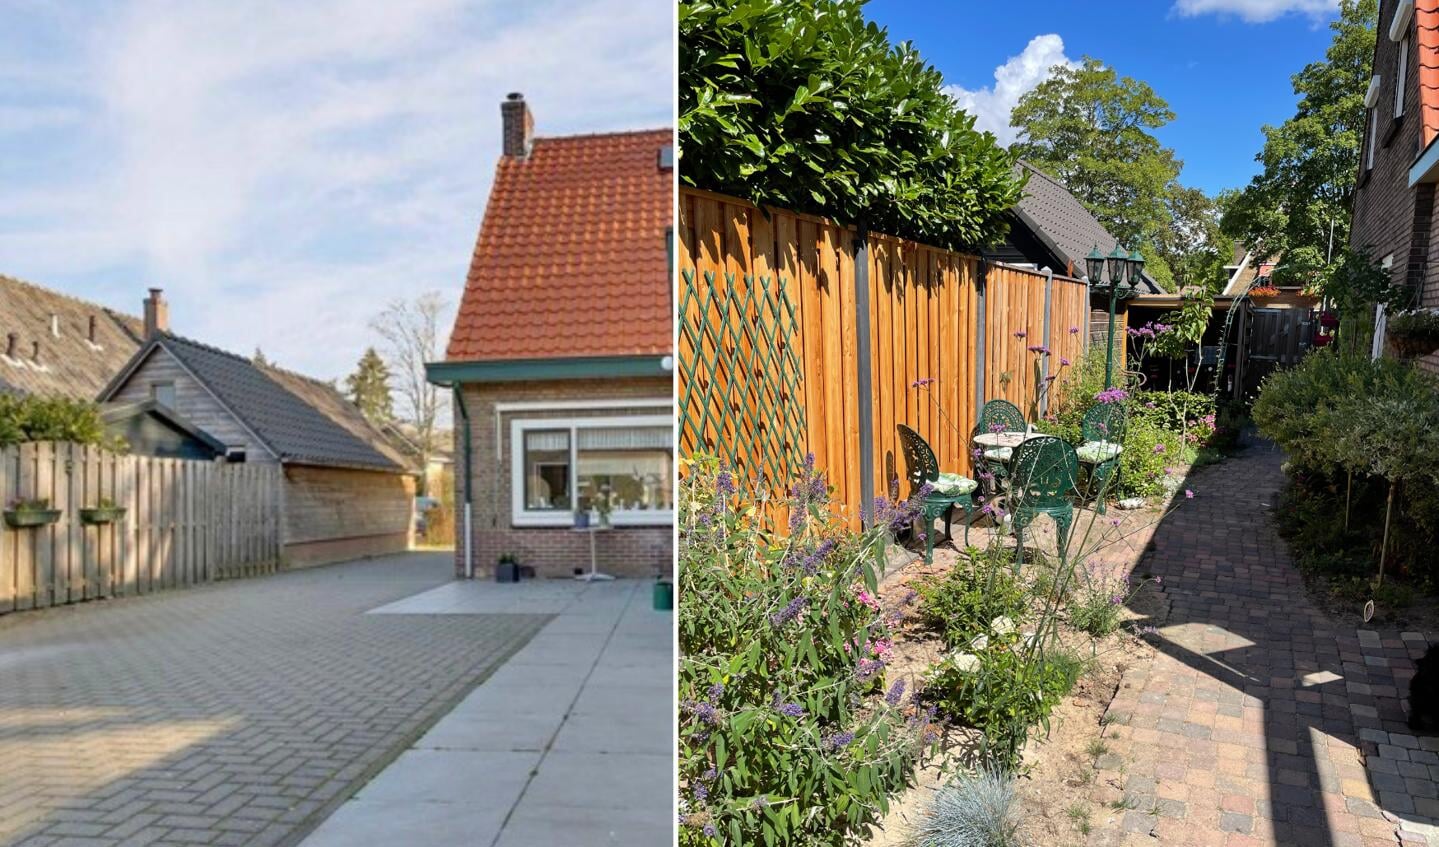 De tegeltaxi van Veluwe Duurzaam haalt gratis tuintegels op als je je tuin vergroent.